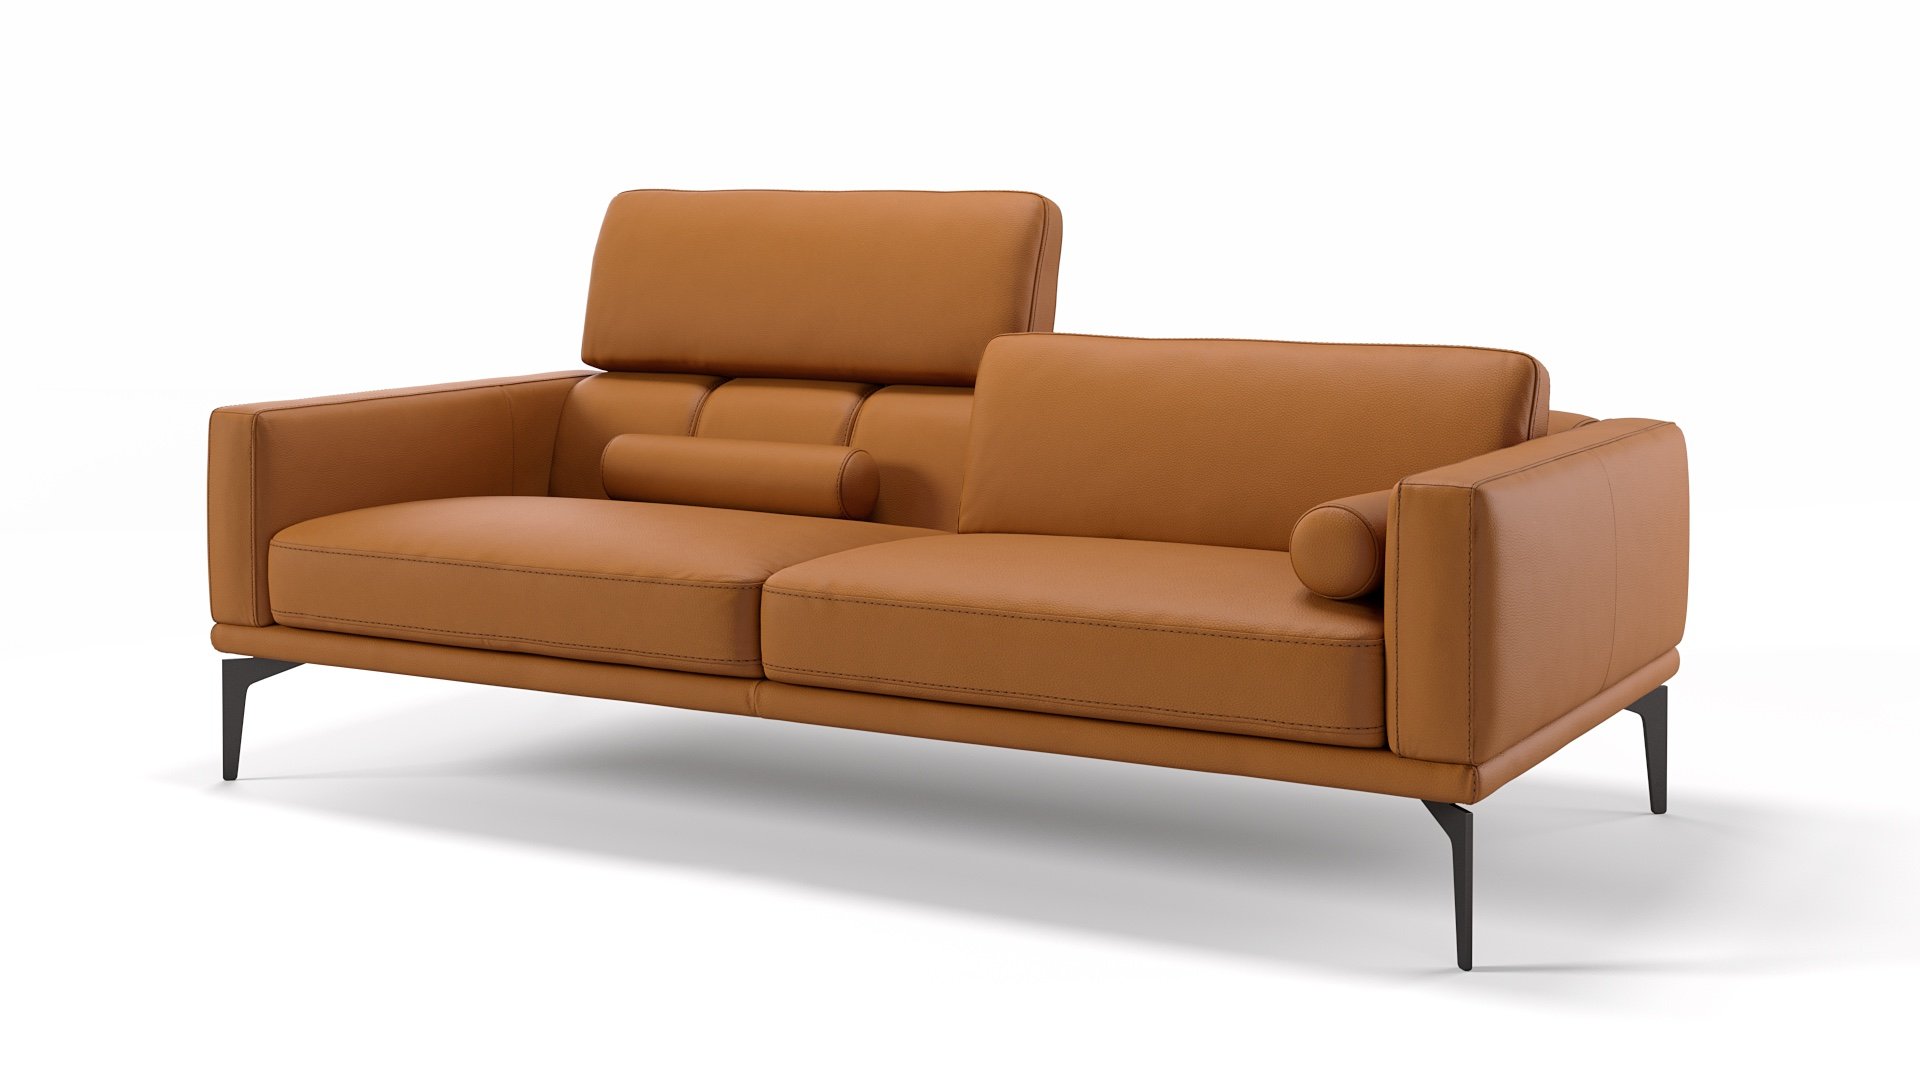 Nierenkissen sofa - Der absolute Testsieger unserer Tester